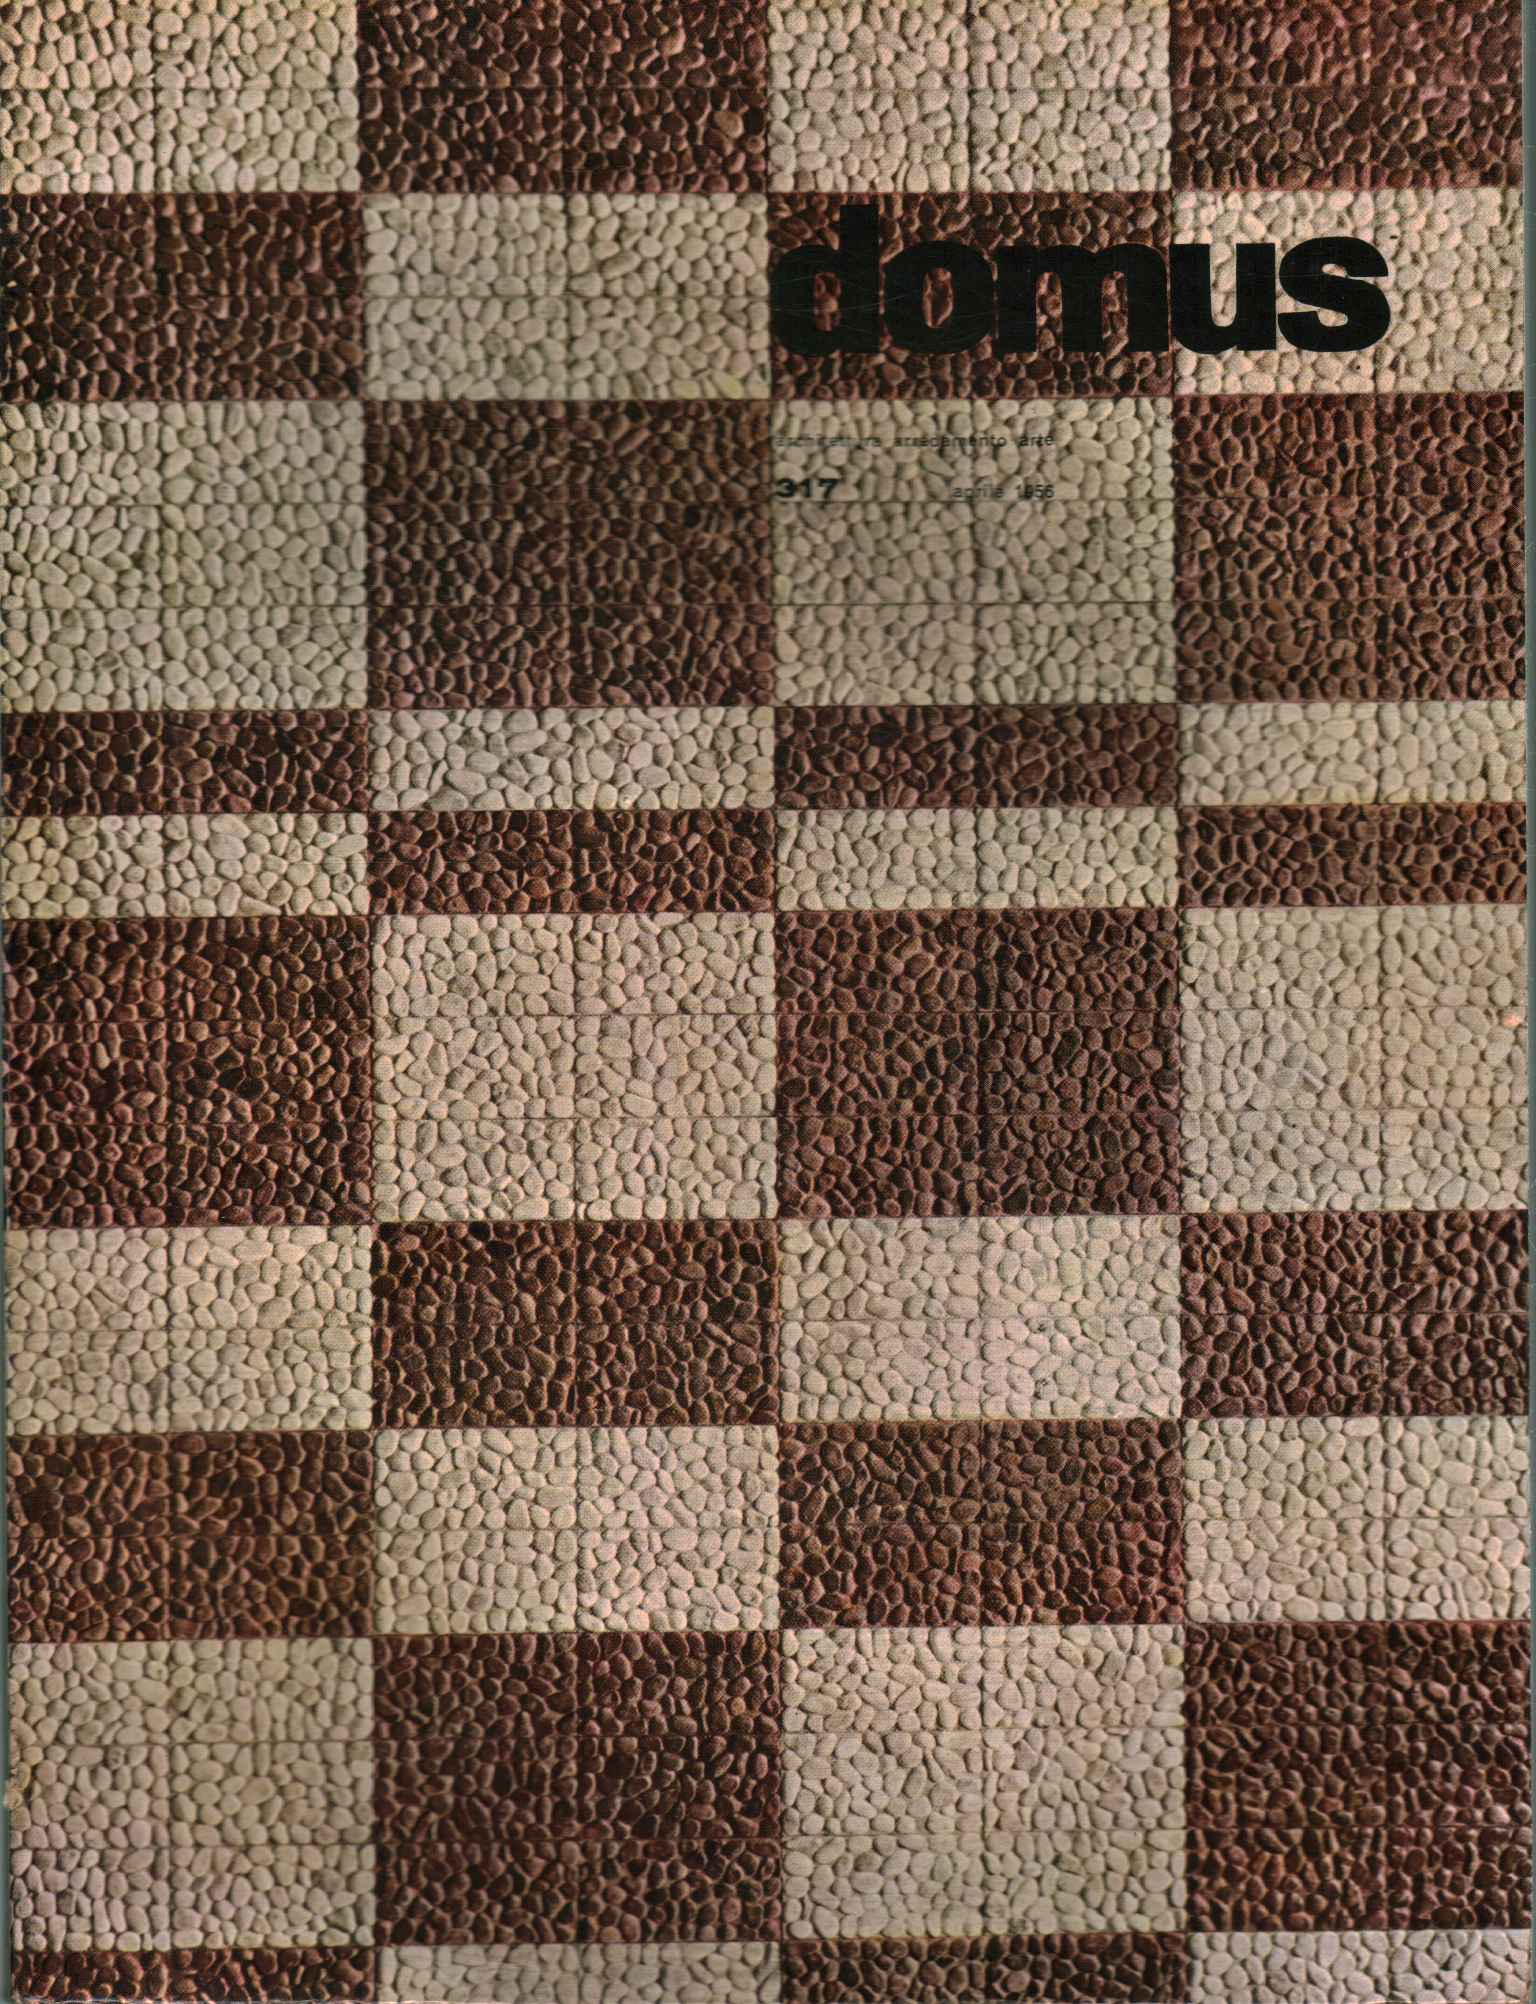 Domus. Architecture, furniture, art (open